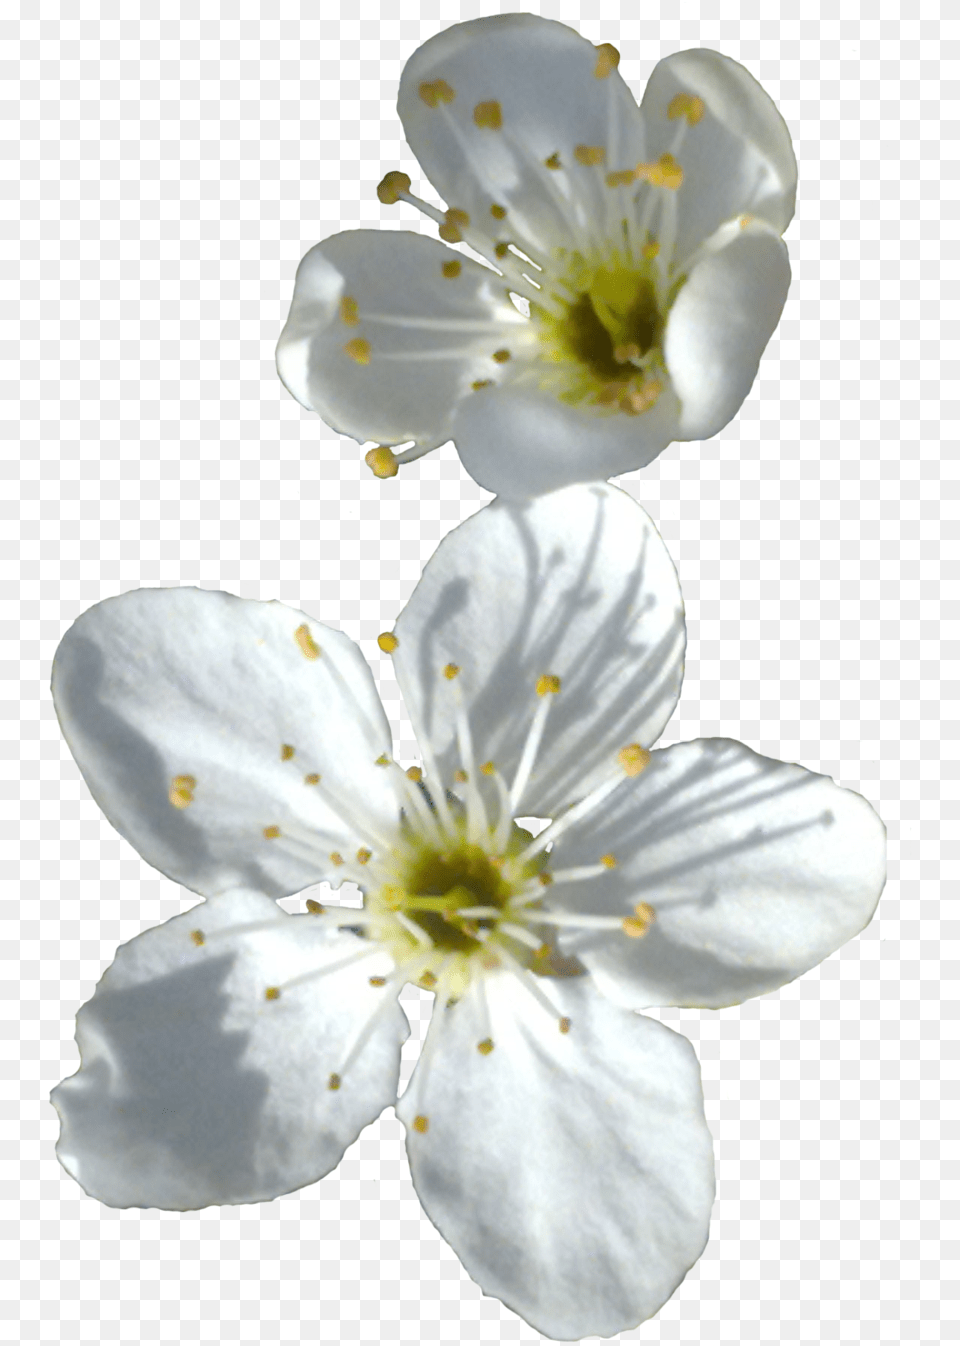 White Flowers Petal, Flower, Pollen, Plant Free Transparent Png